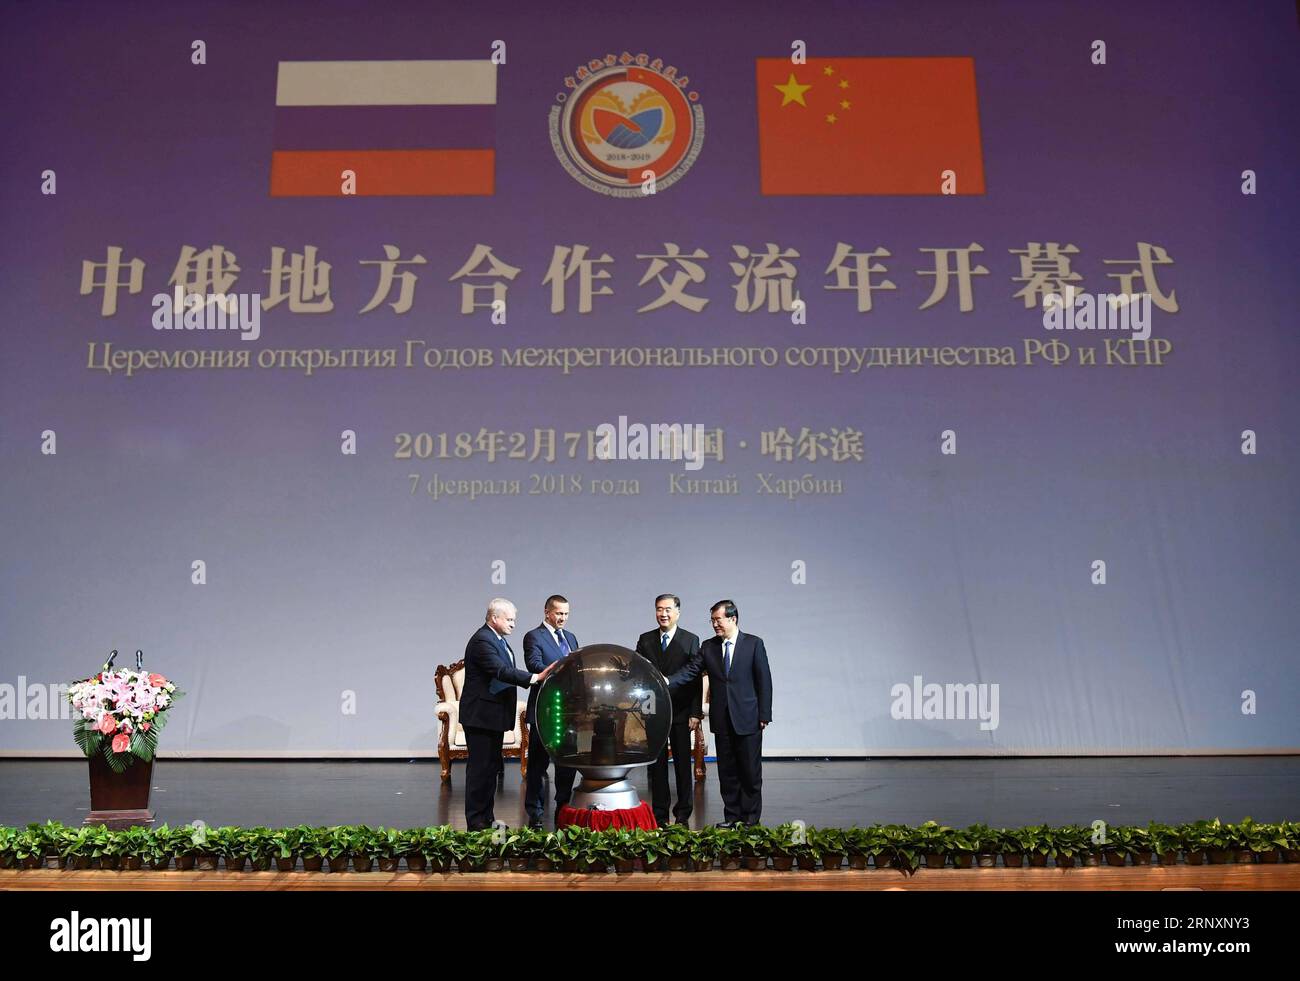 (180207) -- HARBIN, 7 février 2018 -- le vice-premier ministre chinois Wang Yang, également membre du comité permanent du bureau politique du comité central du Parti communiste chinois (PCC), et le vice-premier ministre russe Yury Trutnev, également envoyé présidentiel dans le district fédéral d'extrême-Orient de la Russie, assistent à la cérémonie d'ouverture des années de coopération et d'échanges locaux sino-russes, à Harbin, capitale de la province du Heilongjiang du nord-est de la Chine, le 7 février 2018. ) (Lb) CHINE-HARBIN-RUSSIE-WANG YANG-COOPÉRATION (CN) ZhangxDuo PUBLICATIONxNOTxINxCHN Banque D'Images